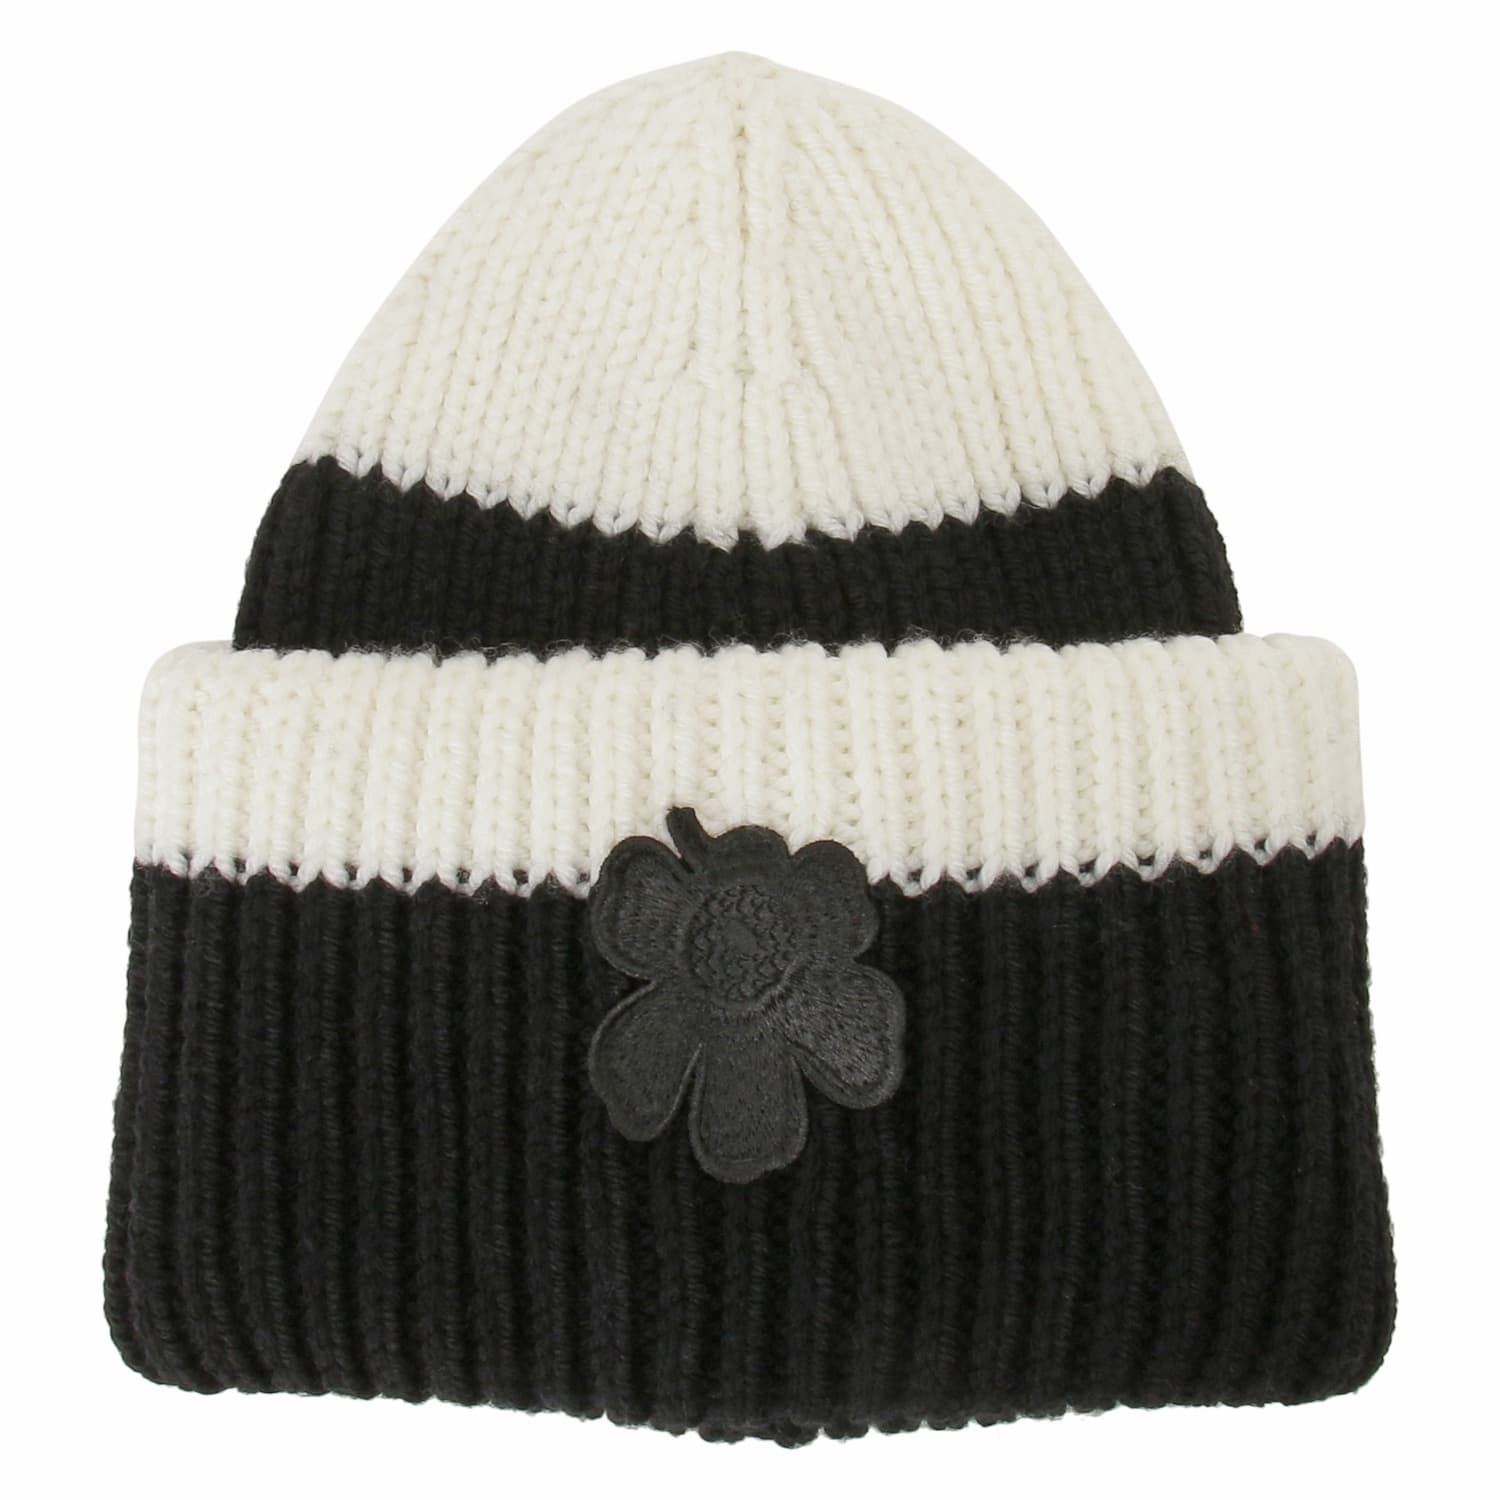 マリメッコ ニット帽 帽子 marimekko 091659 910 ビーニー ウニッコ ワンポイント カラーリング ブラック×ホワイト ニットキャップ Ludia Beanie Knitted Hat 091659-910